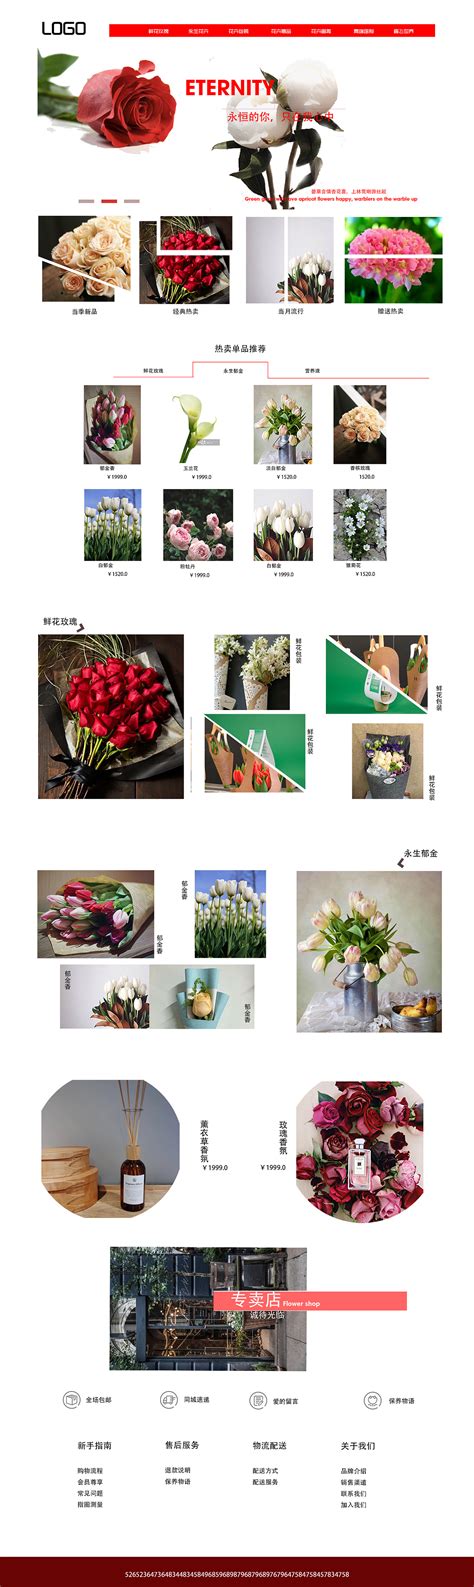 鲜花企业网页设计模板素材